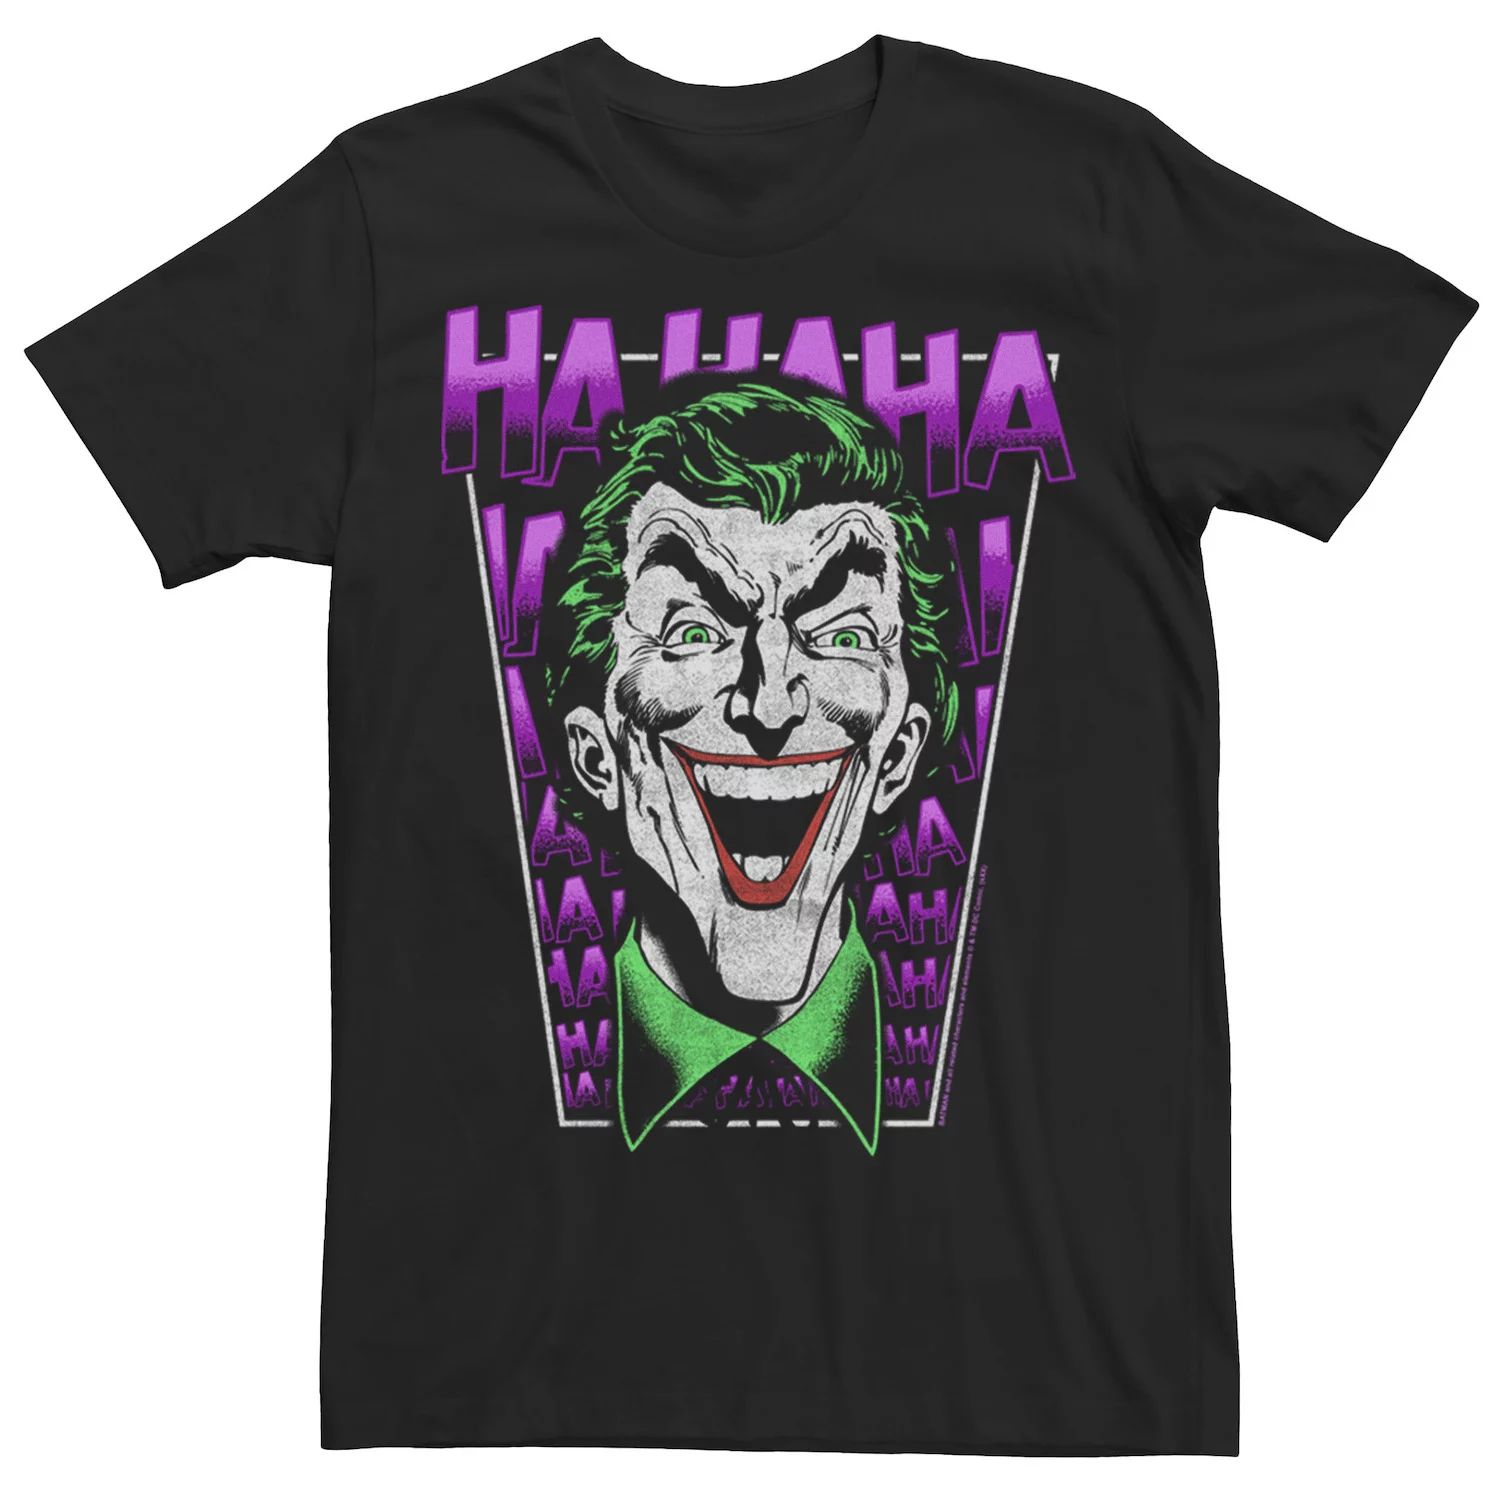 Мужская футболка DC Comics Batman Joker HA HA HA Licensed Character приор групп кружка сувенирная joker ha ha